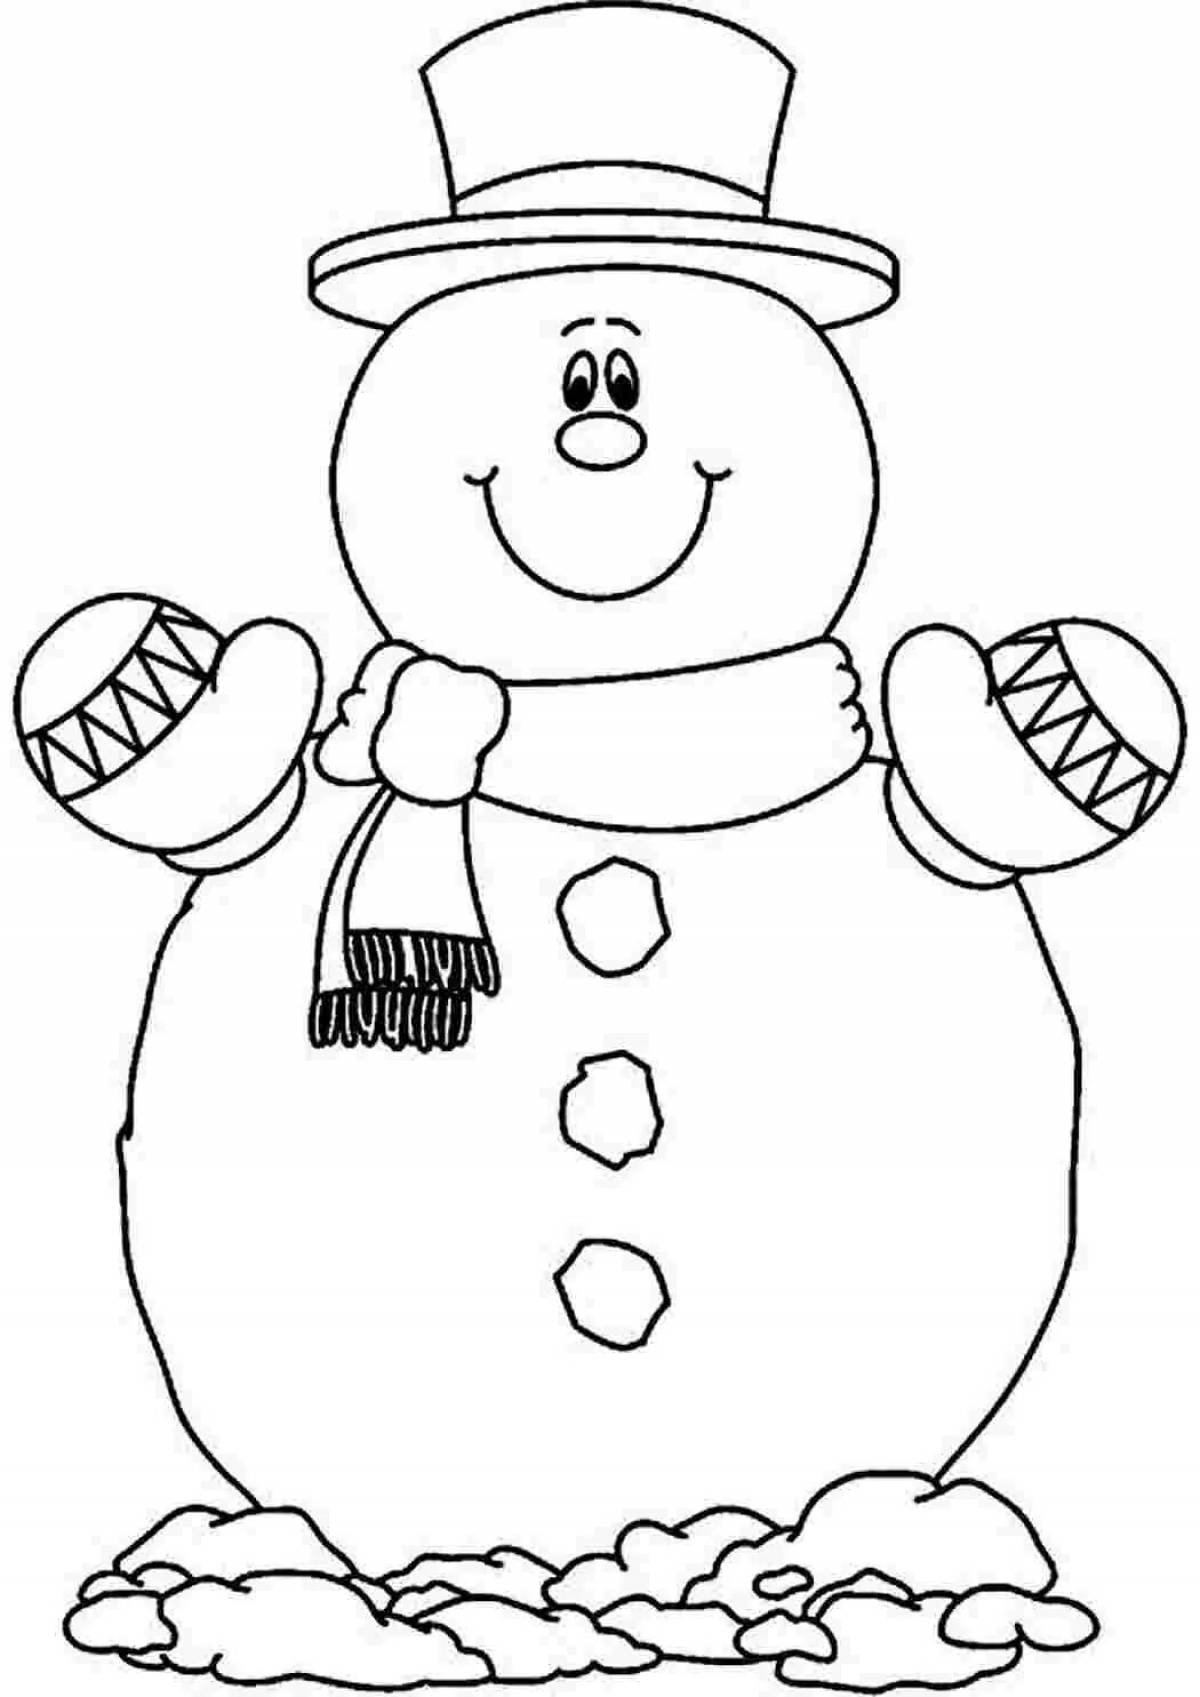 Раскраска Снеговик и дети распечатать бесплатно